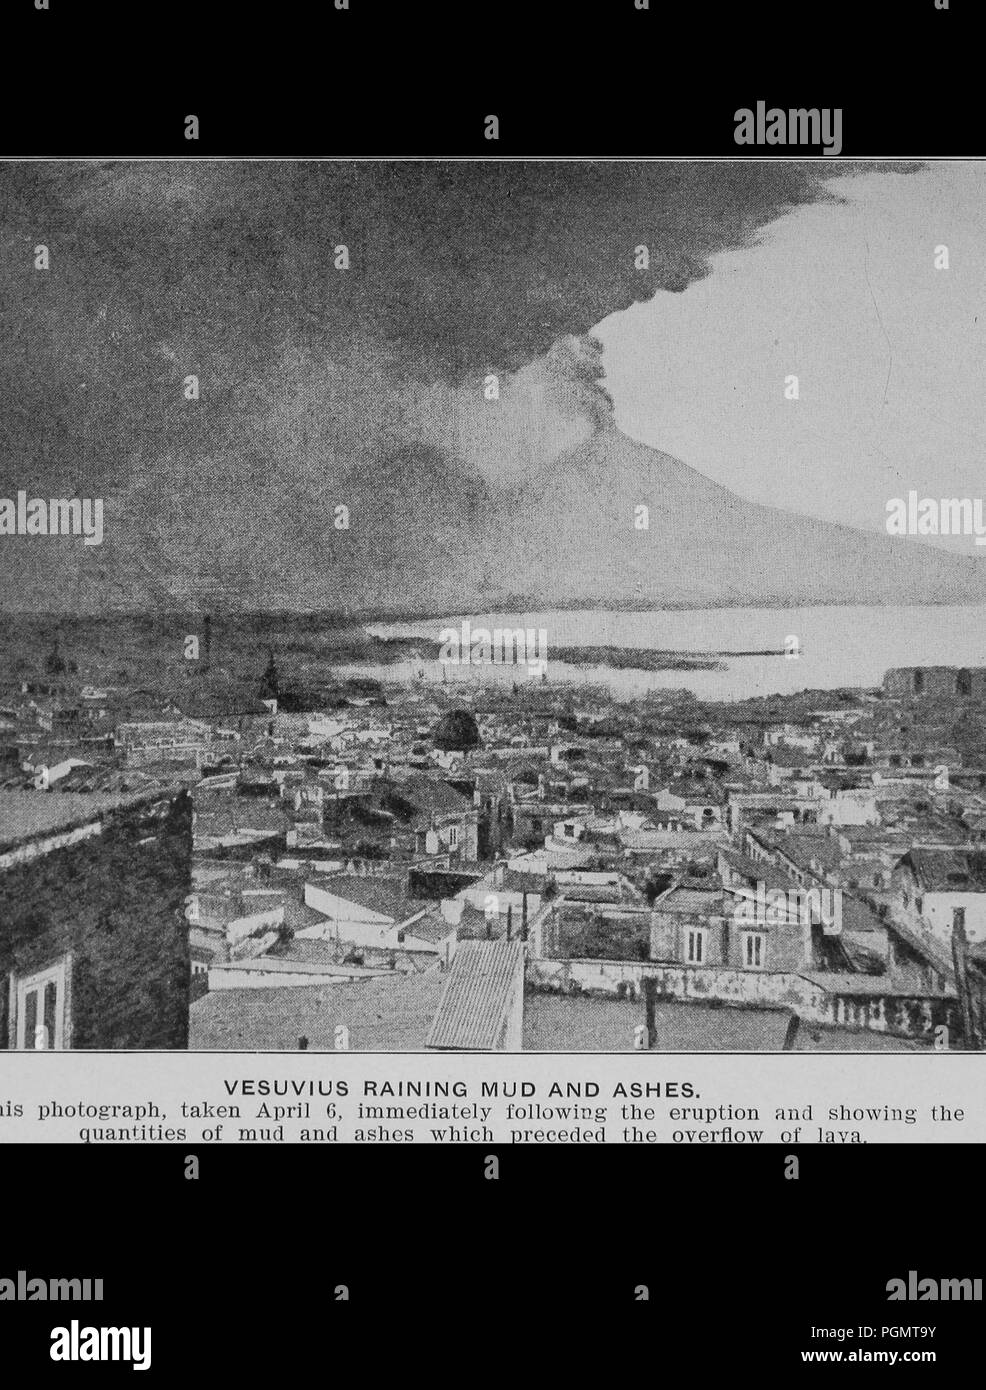 Fotografia in bianco e nero che mostra una nuvola di fango e ceneri provenienti dal Vesuvio e appesi sopra un italiano cittadina balneare a seguito di una eruzione vulcanica il 5 aprile 1906, 1906. La cortesia Internet Archive. () Foto Stock